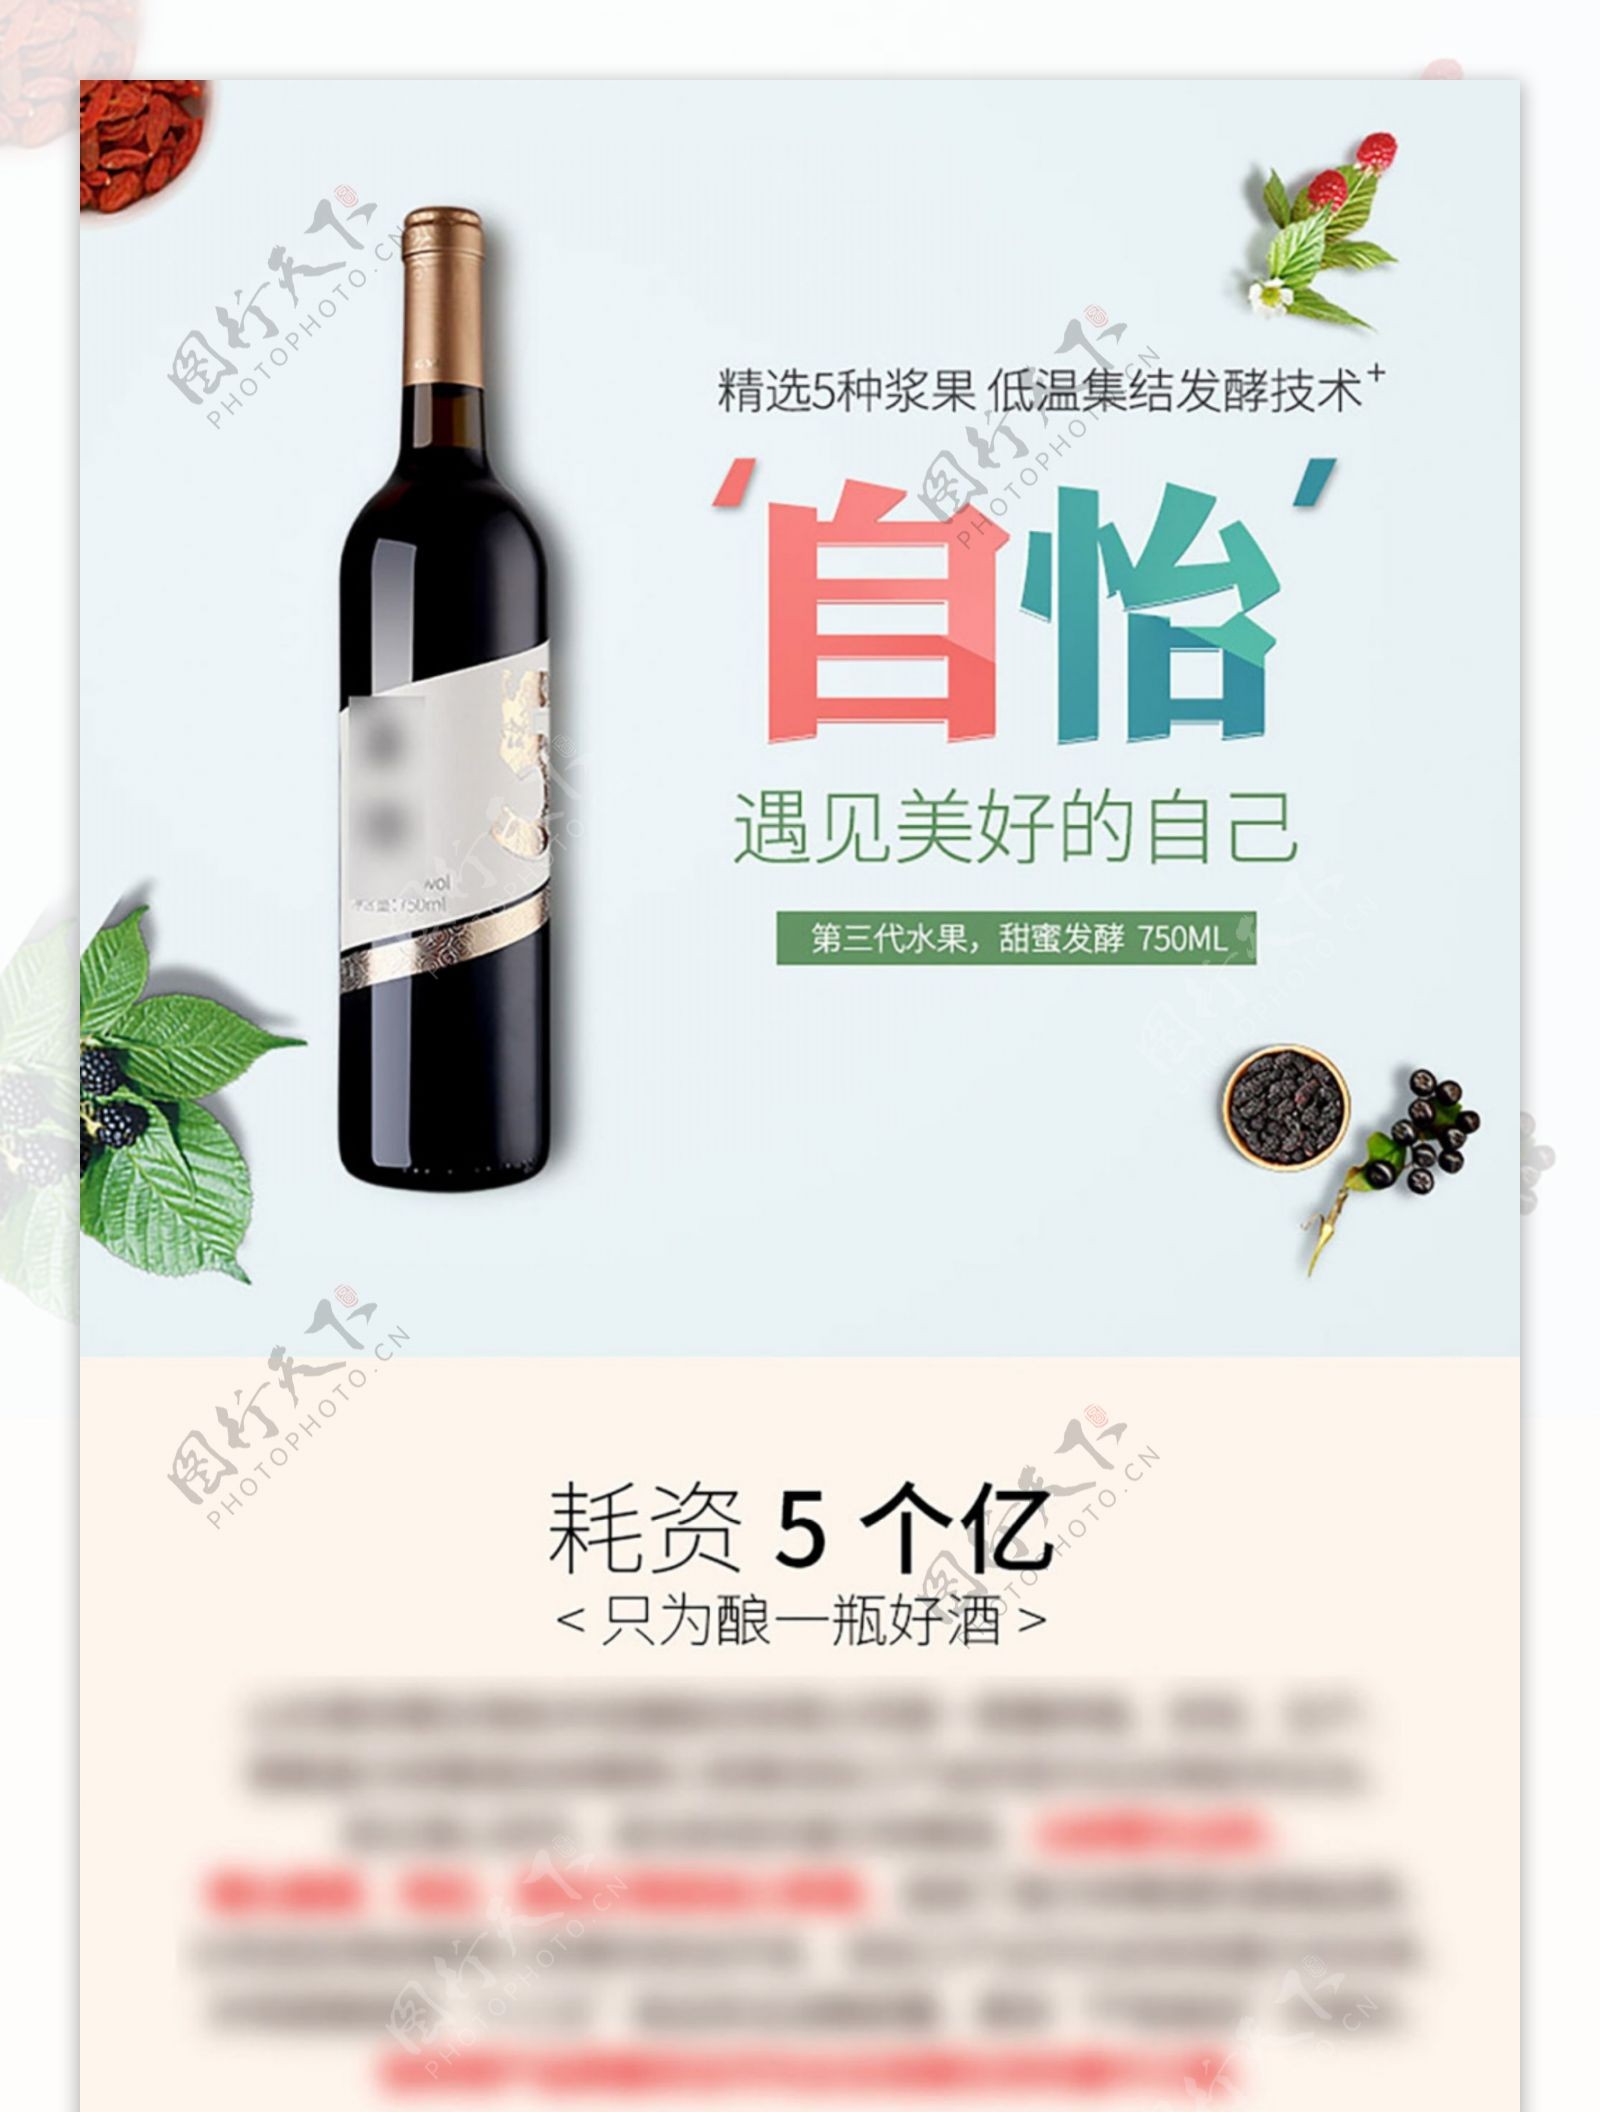 天猫电商淘宝树莓果酒全球酒水节促销详情